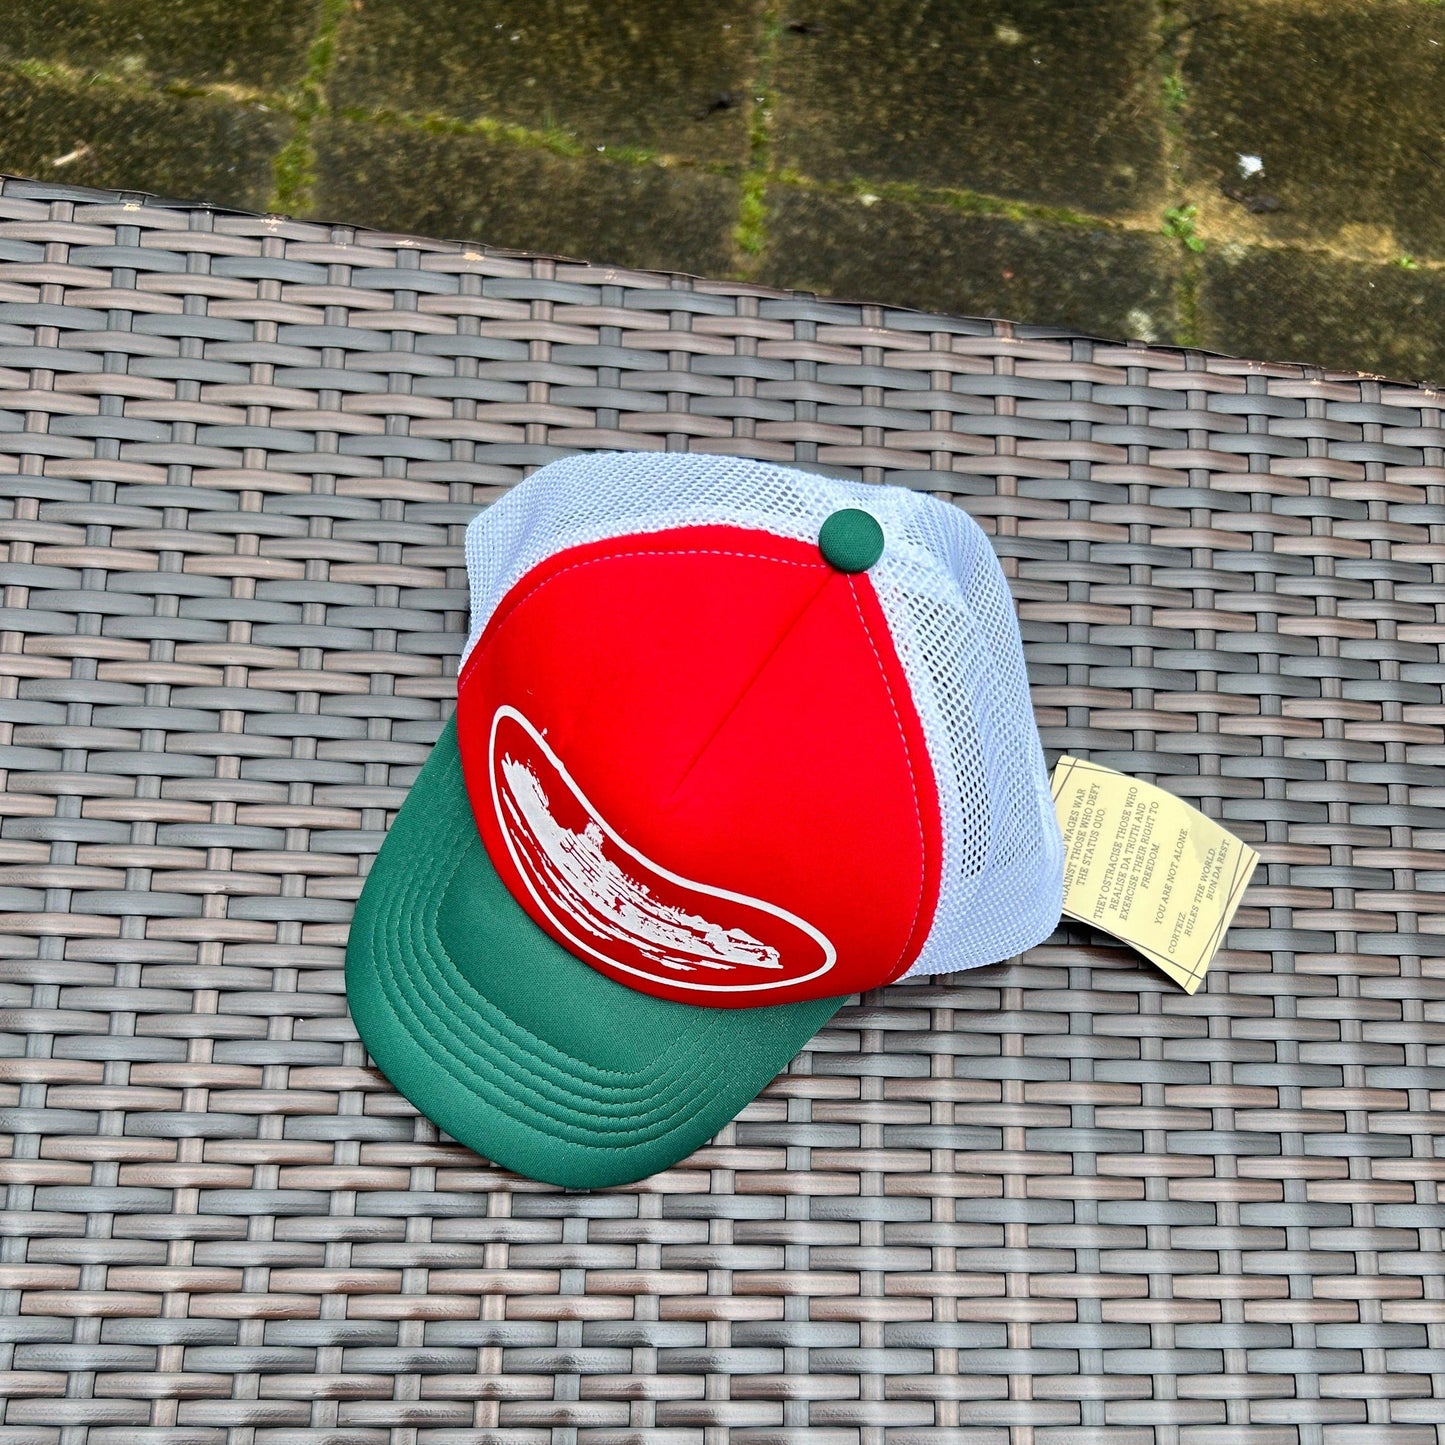 Corteiz Red/Green/White "Alcatraz" Trucker Hat